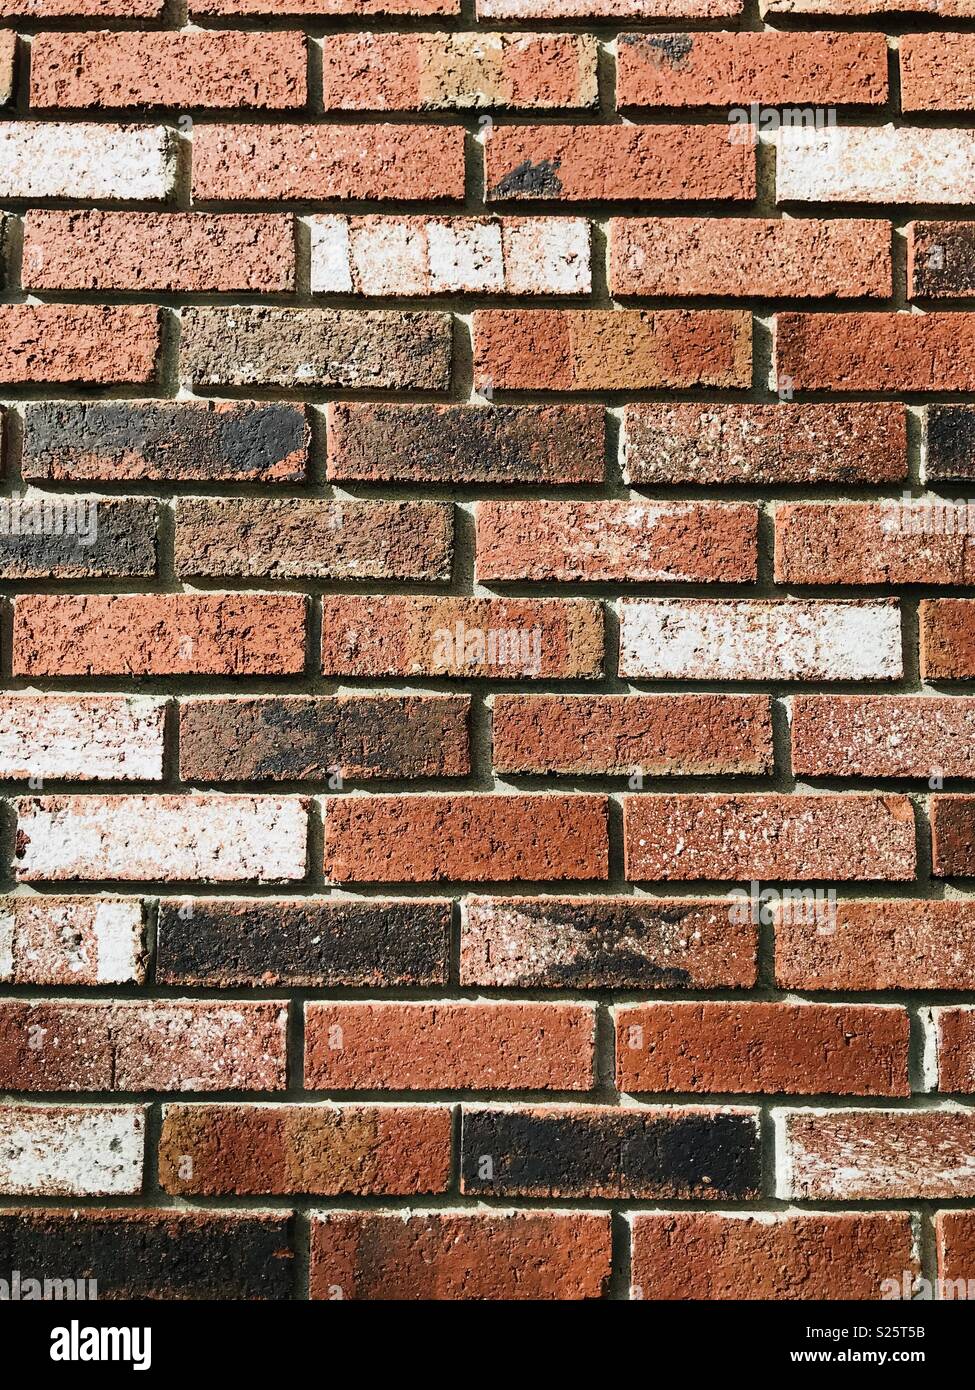 Multicolored bricks Stock Photo